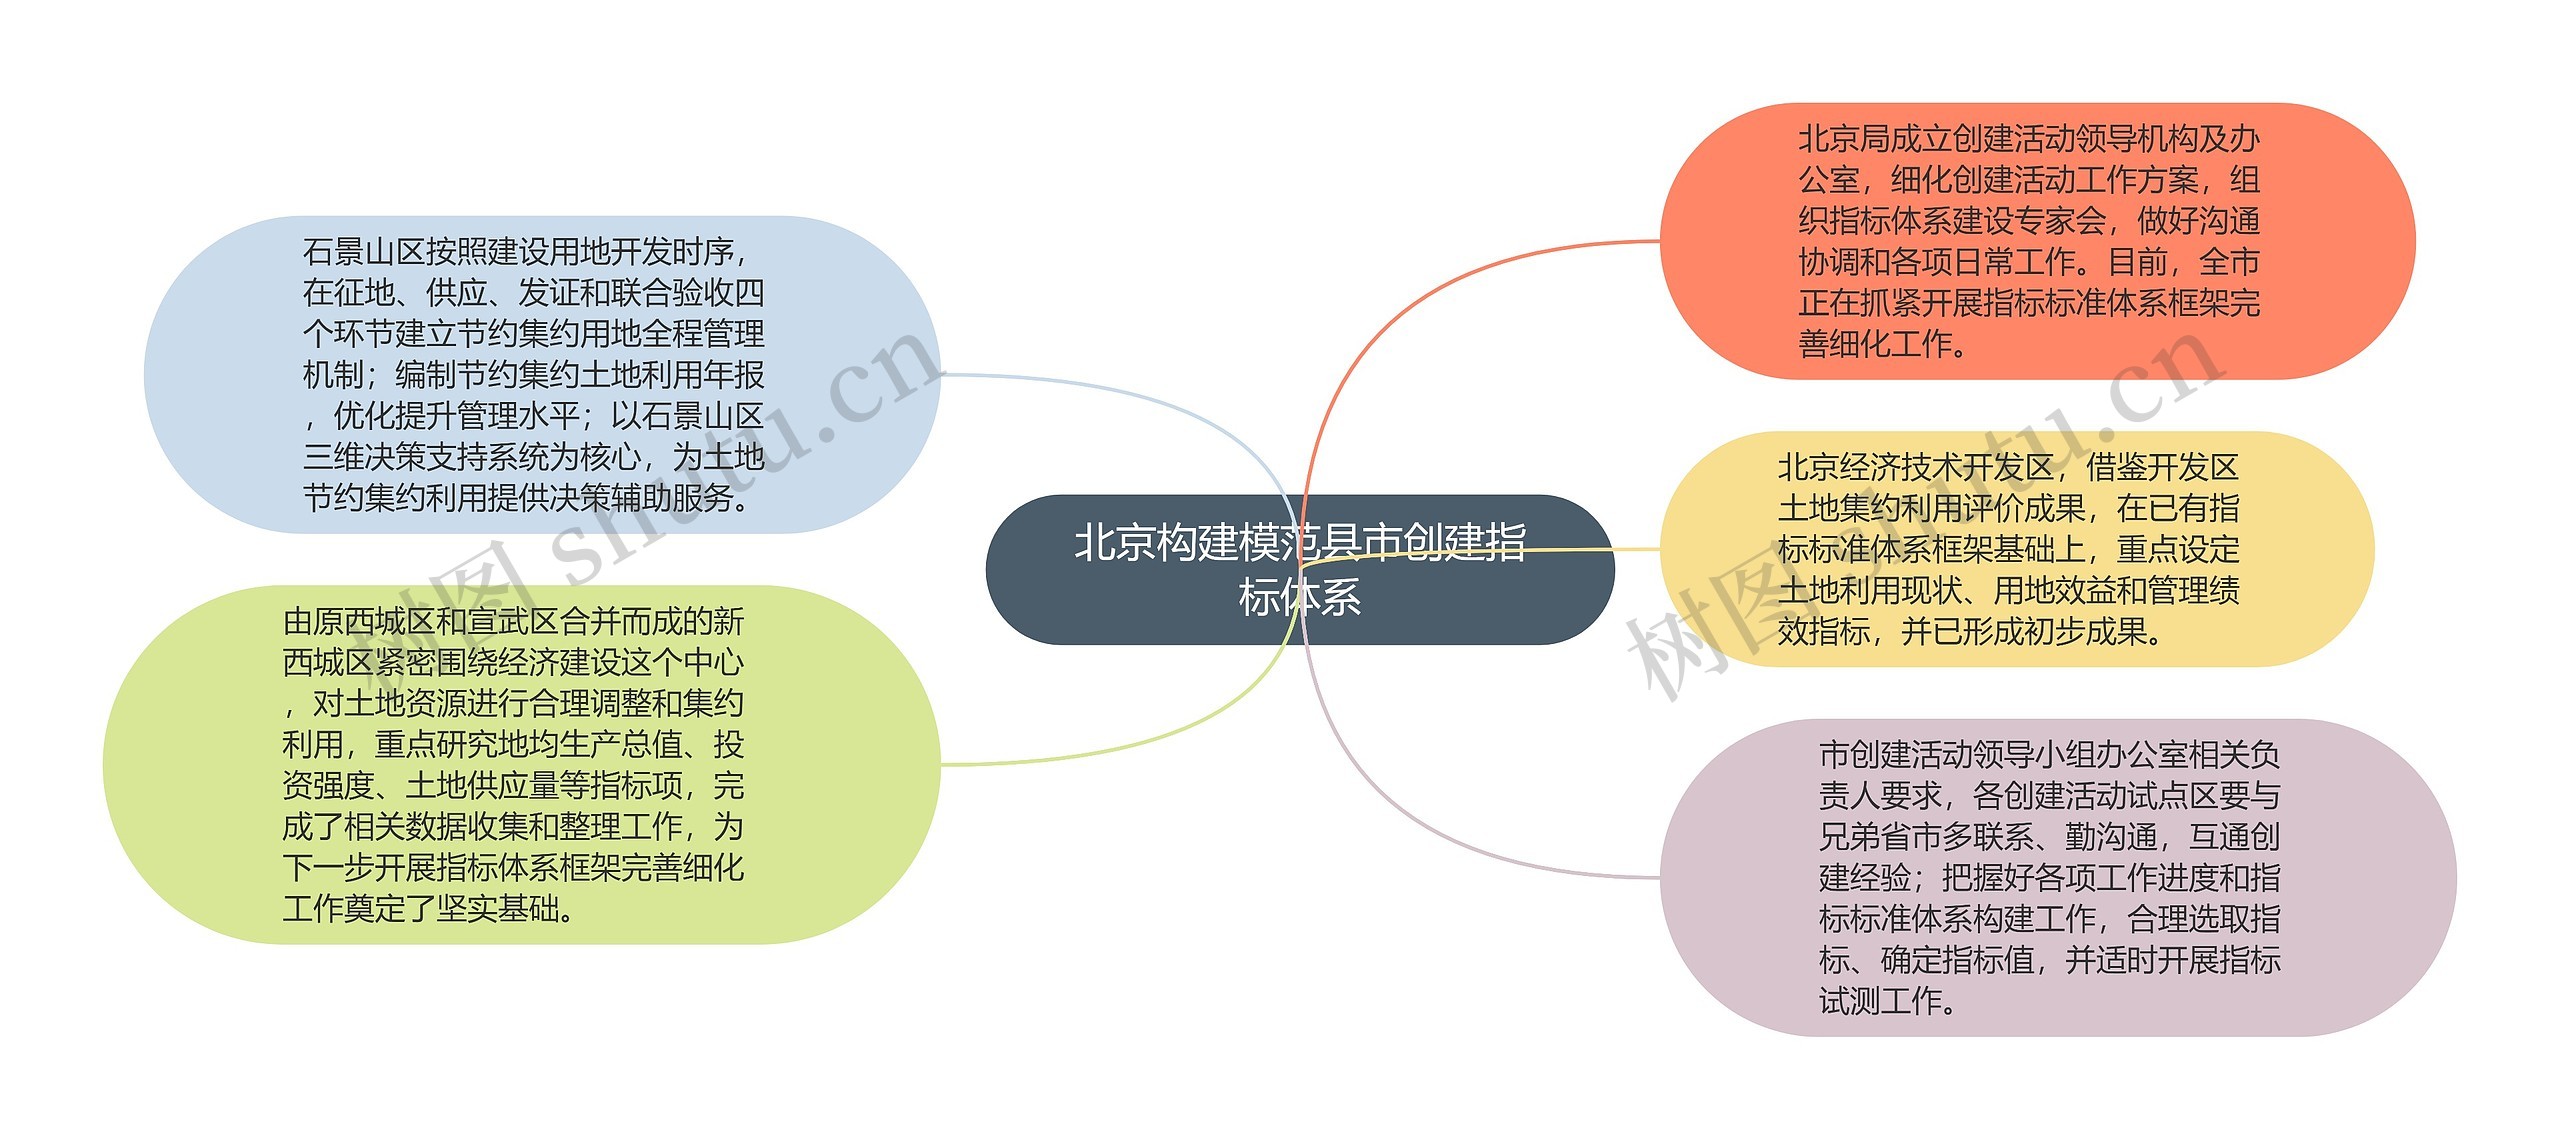 北京构建模范县市创建指标体系